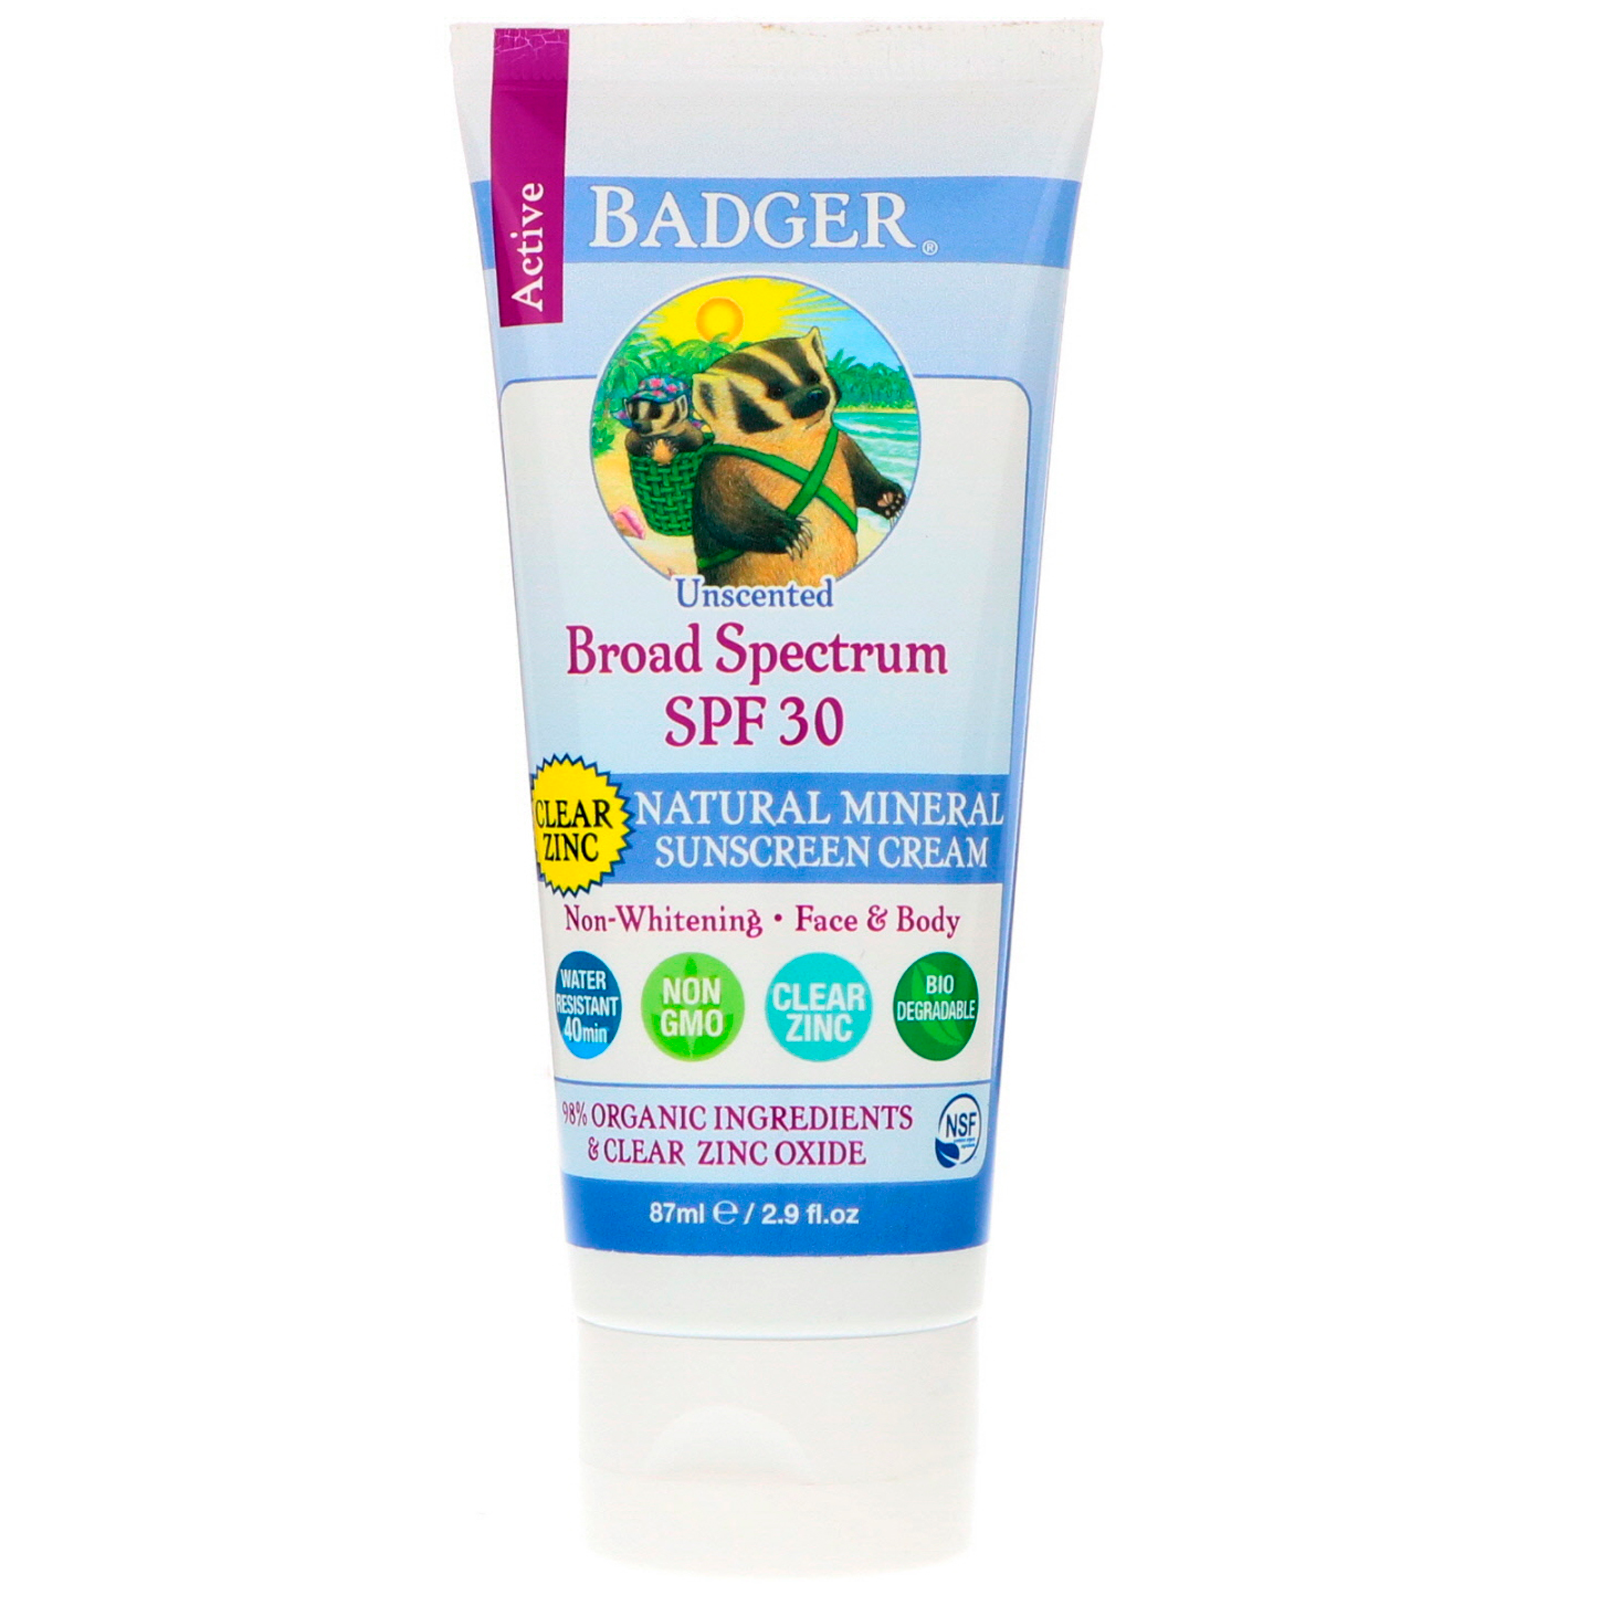 曬太多肌膚提早老化 | 10件 防曬 產品迎炎夏 | Badger Company